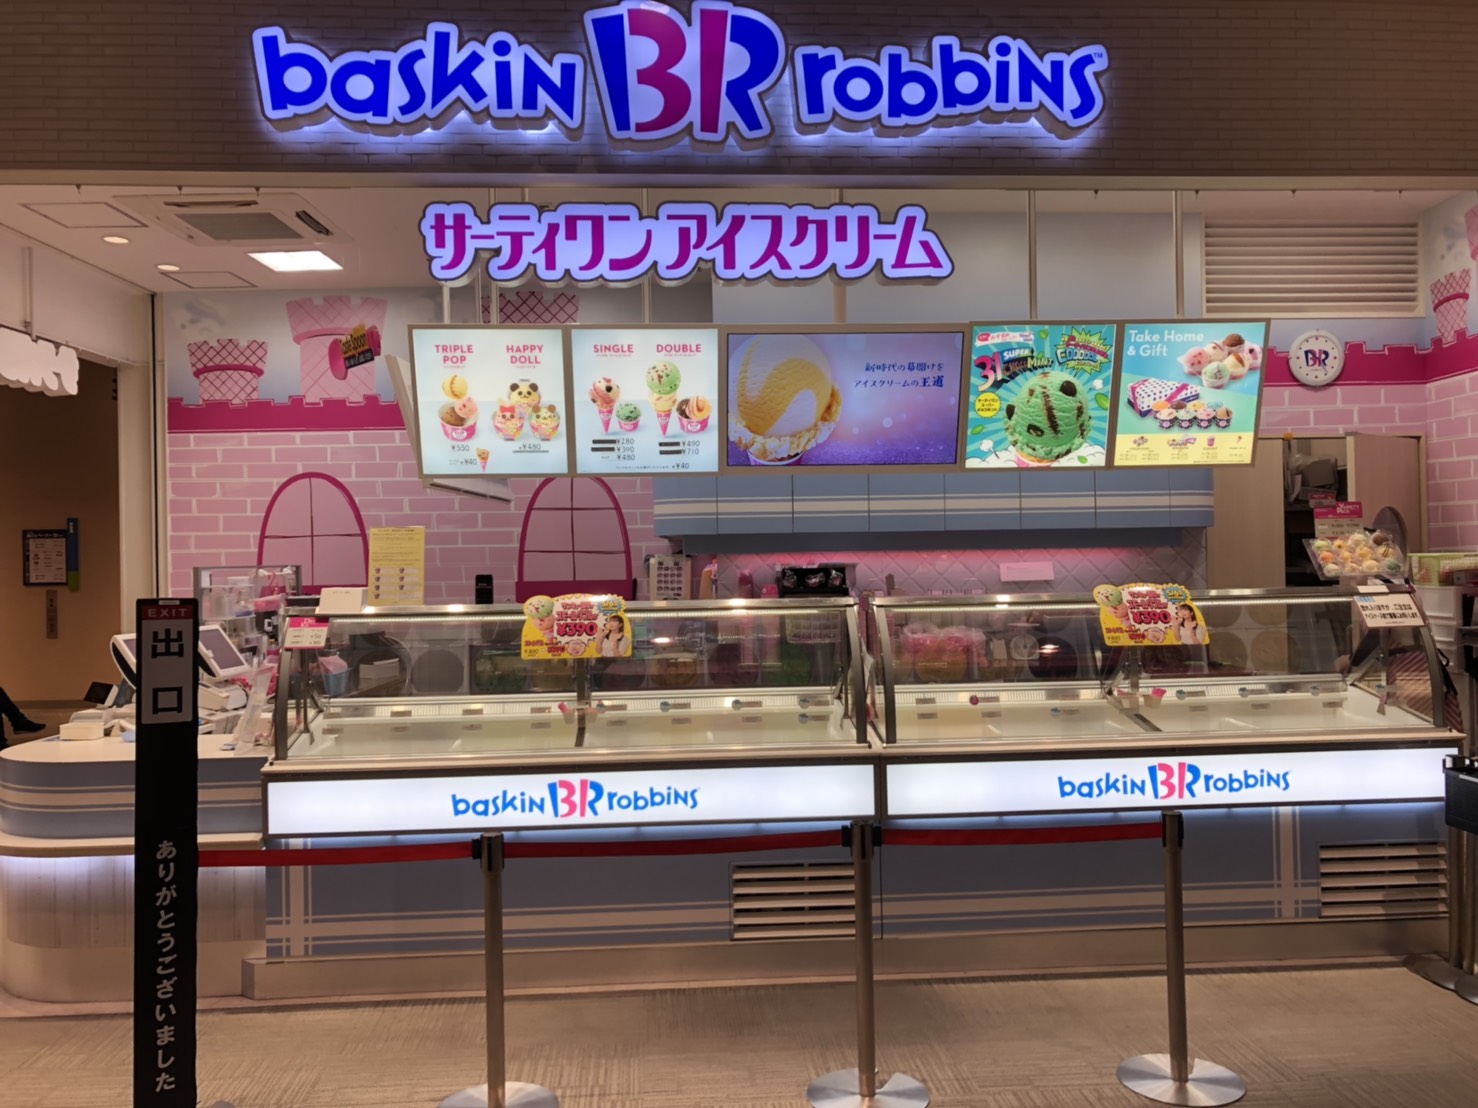 サーティワンアイスクリーム ららぽーと磐田店 店舗情報 B R サーティワンアイスクリーム